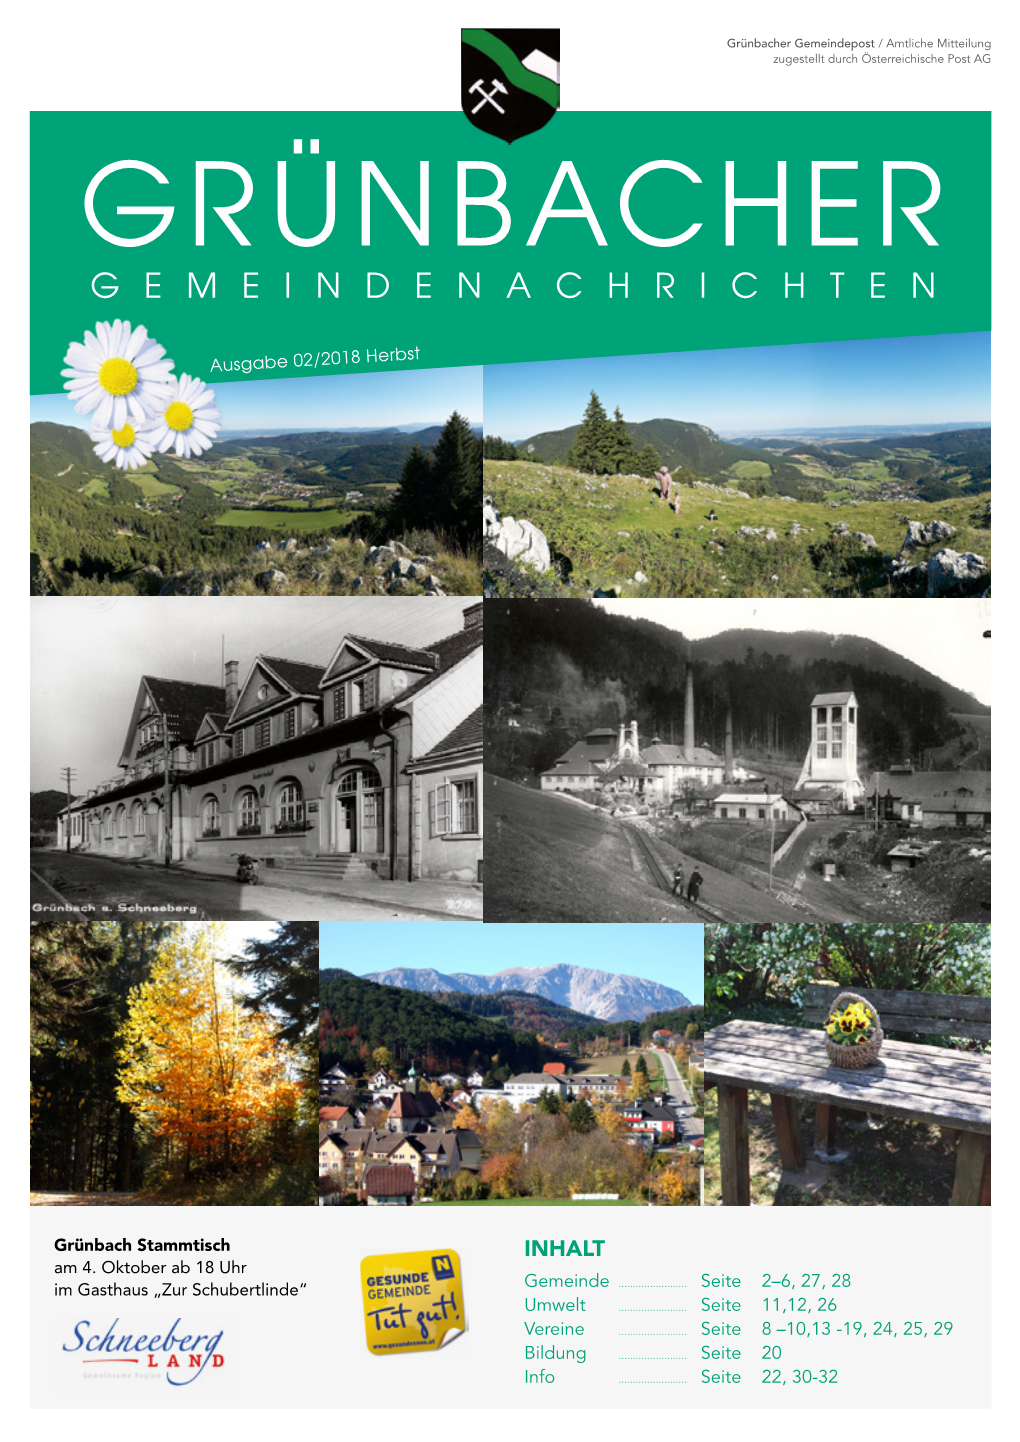 Grünbacher Gemeindepost / Amtliche Mitteilung Zugestellt Durch Österreichische Post AG GRÜNBACHER GEMEINDENACHRICHTEN